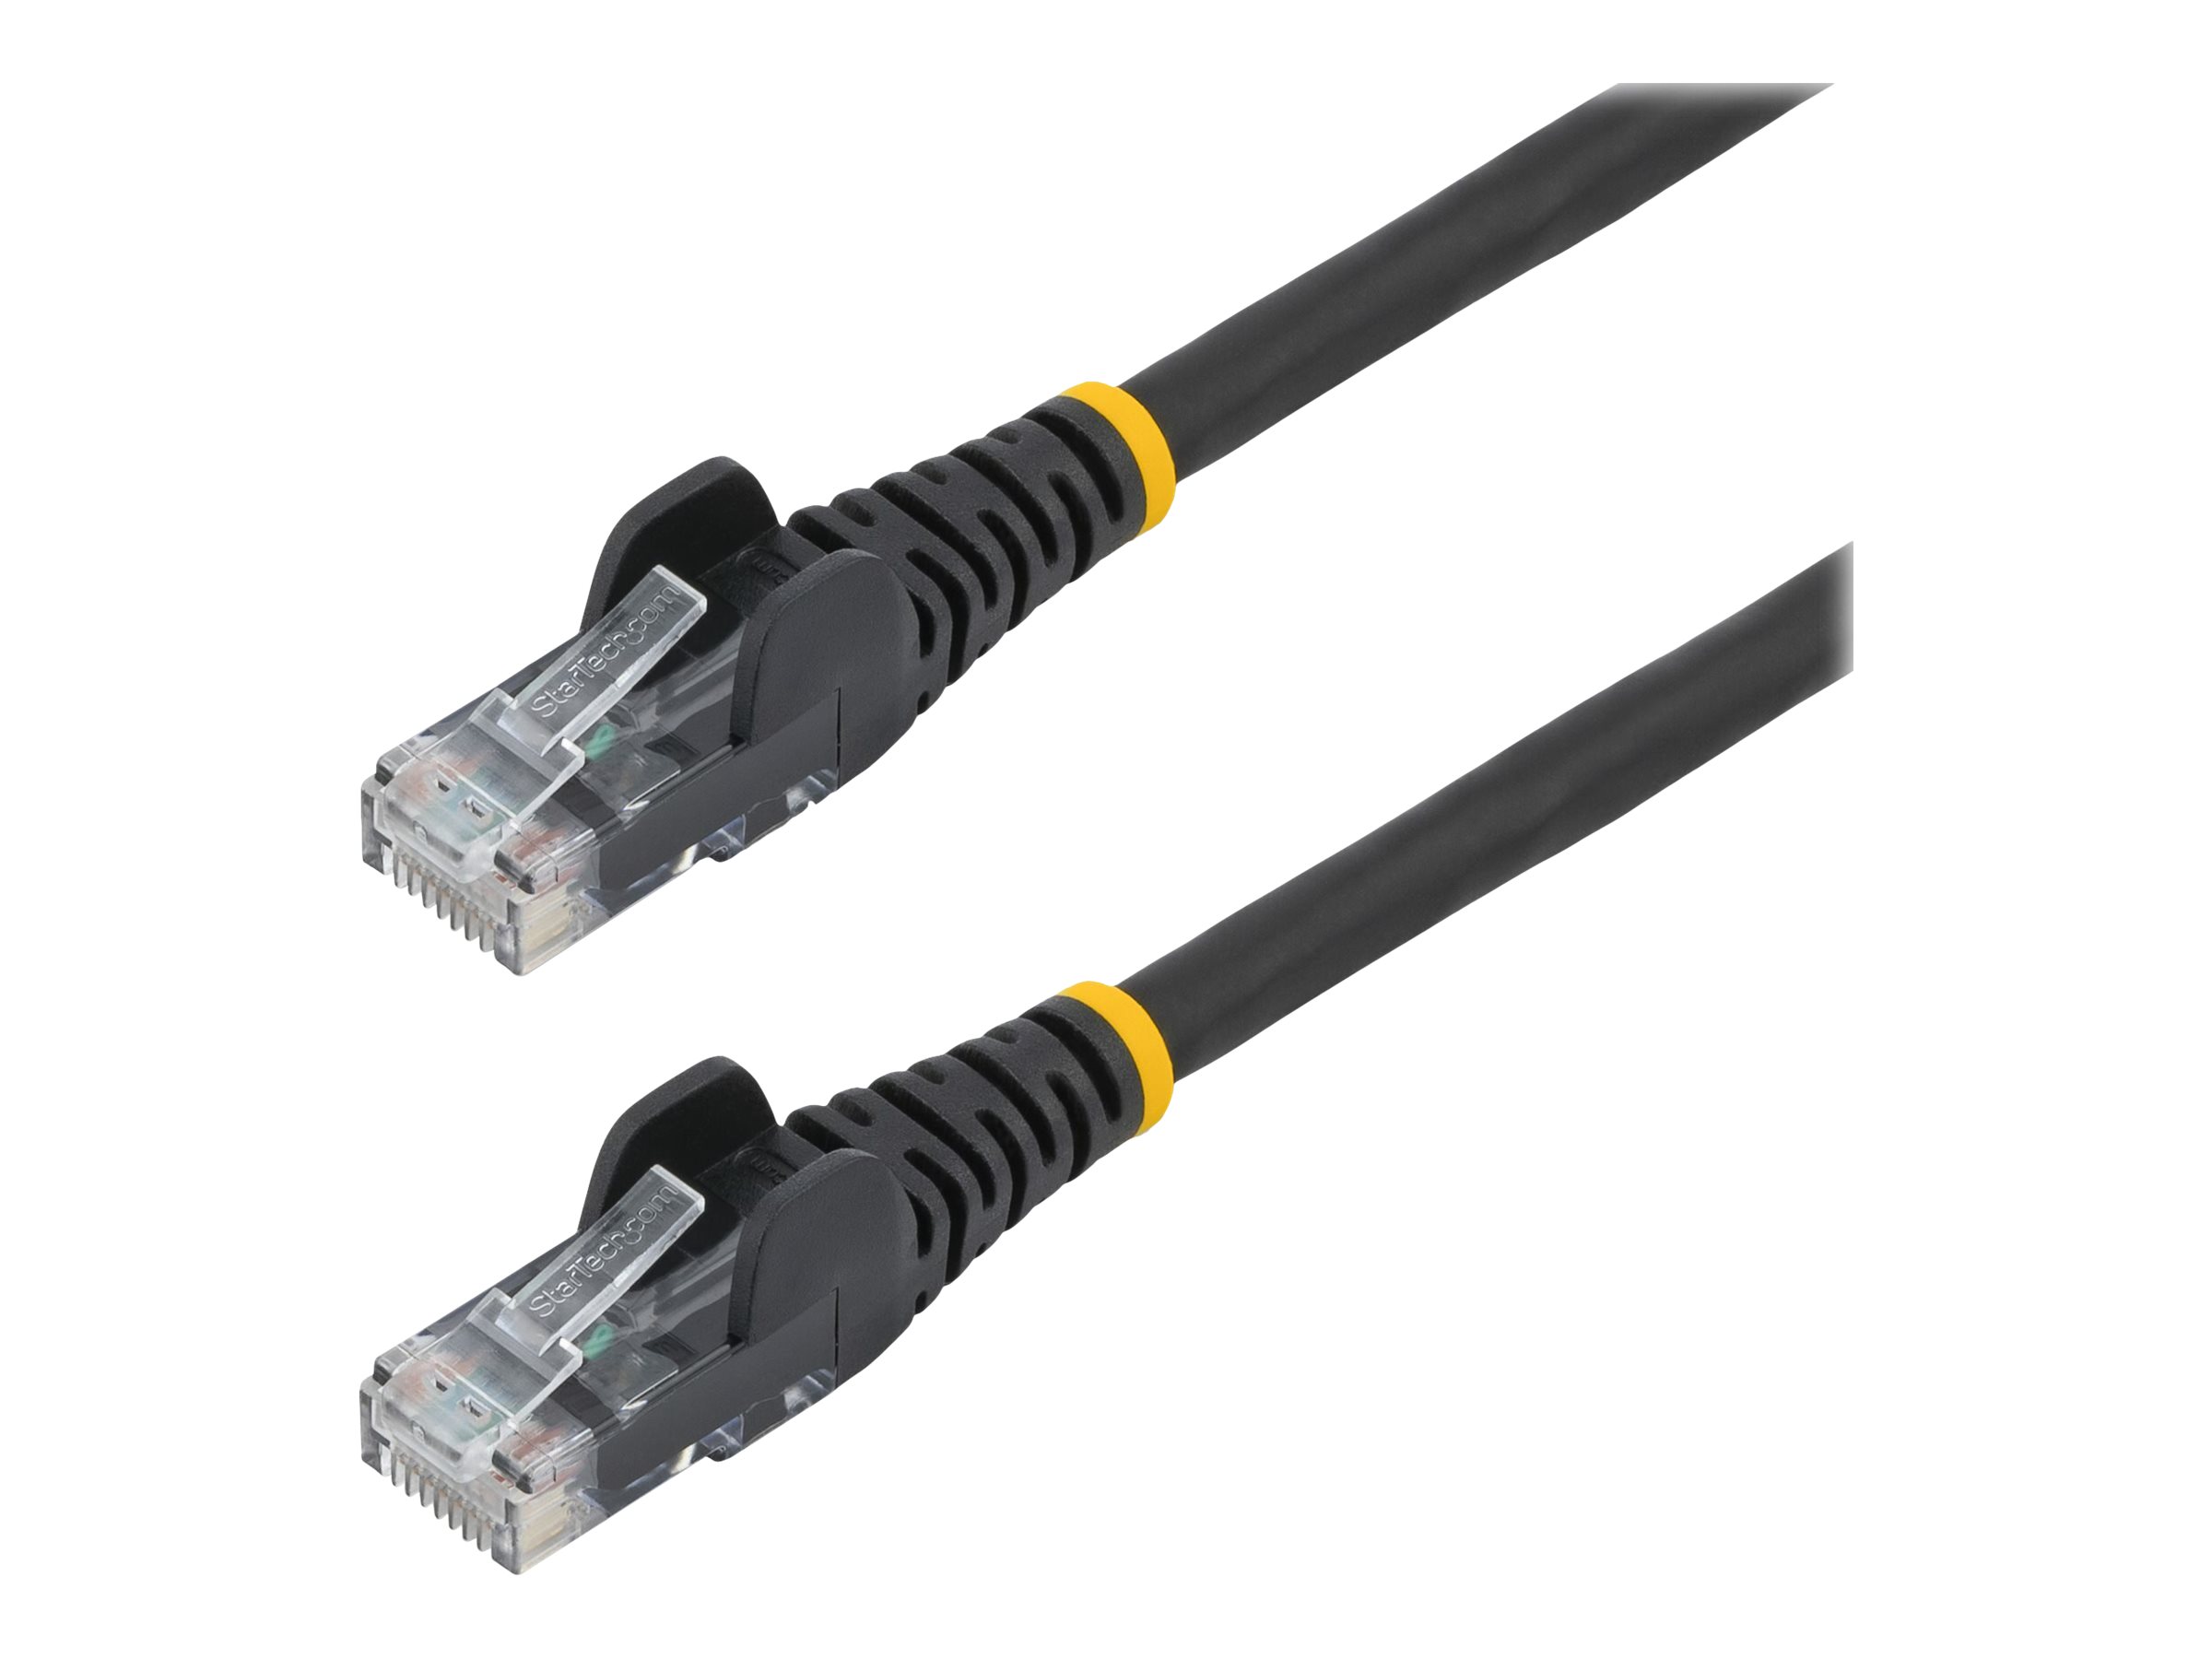 StarTech.com Câble Ethernet CAT6 3m - LSZH (Low Smoke Zero Halogen) - Cordon RJ45 UTP Anti-accrochage 10 GbE LAN - Câble Réseau Internet 650MHz 100W PoE - Noir - Snagless - 24AWG (N6LPATCH3MBK) - Cordon de raccordement - RJ-45 (M) pour RJ-45 (M) - 3 m - 6 mm - UTP - CAT 6 - sans crochet - noir - N6LPATCH3MBK - Câbles à paire torsadée